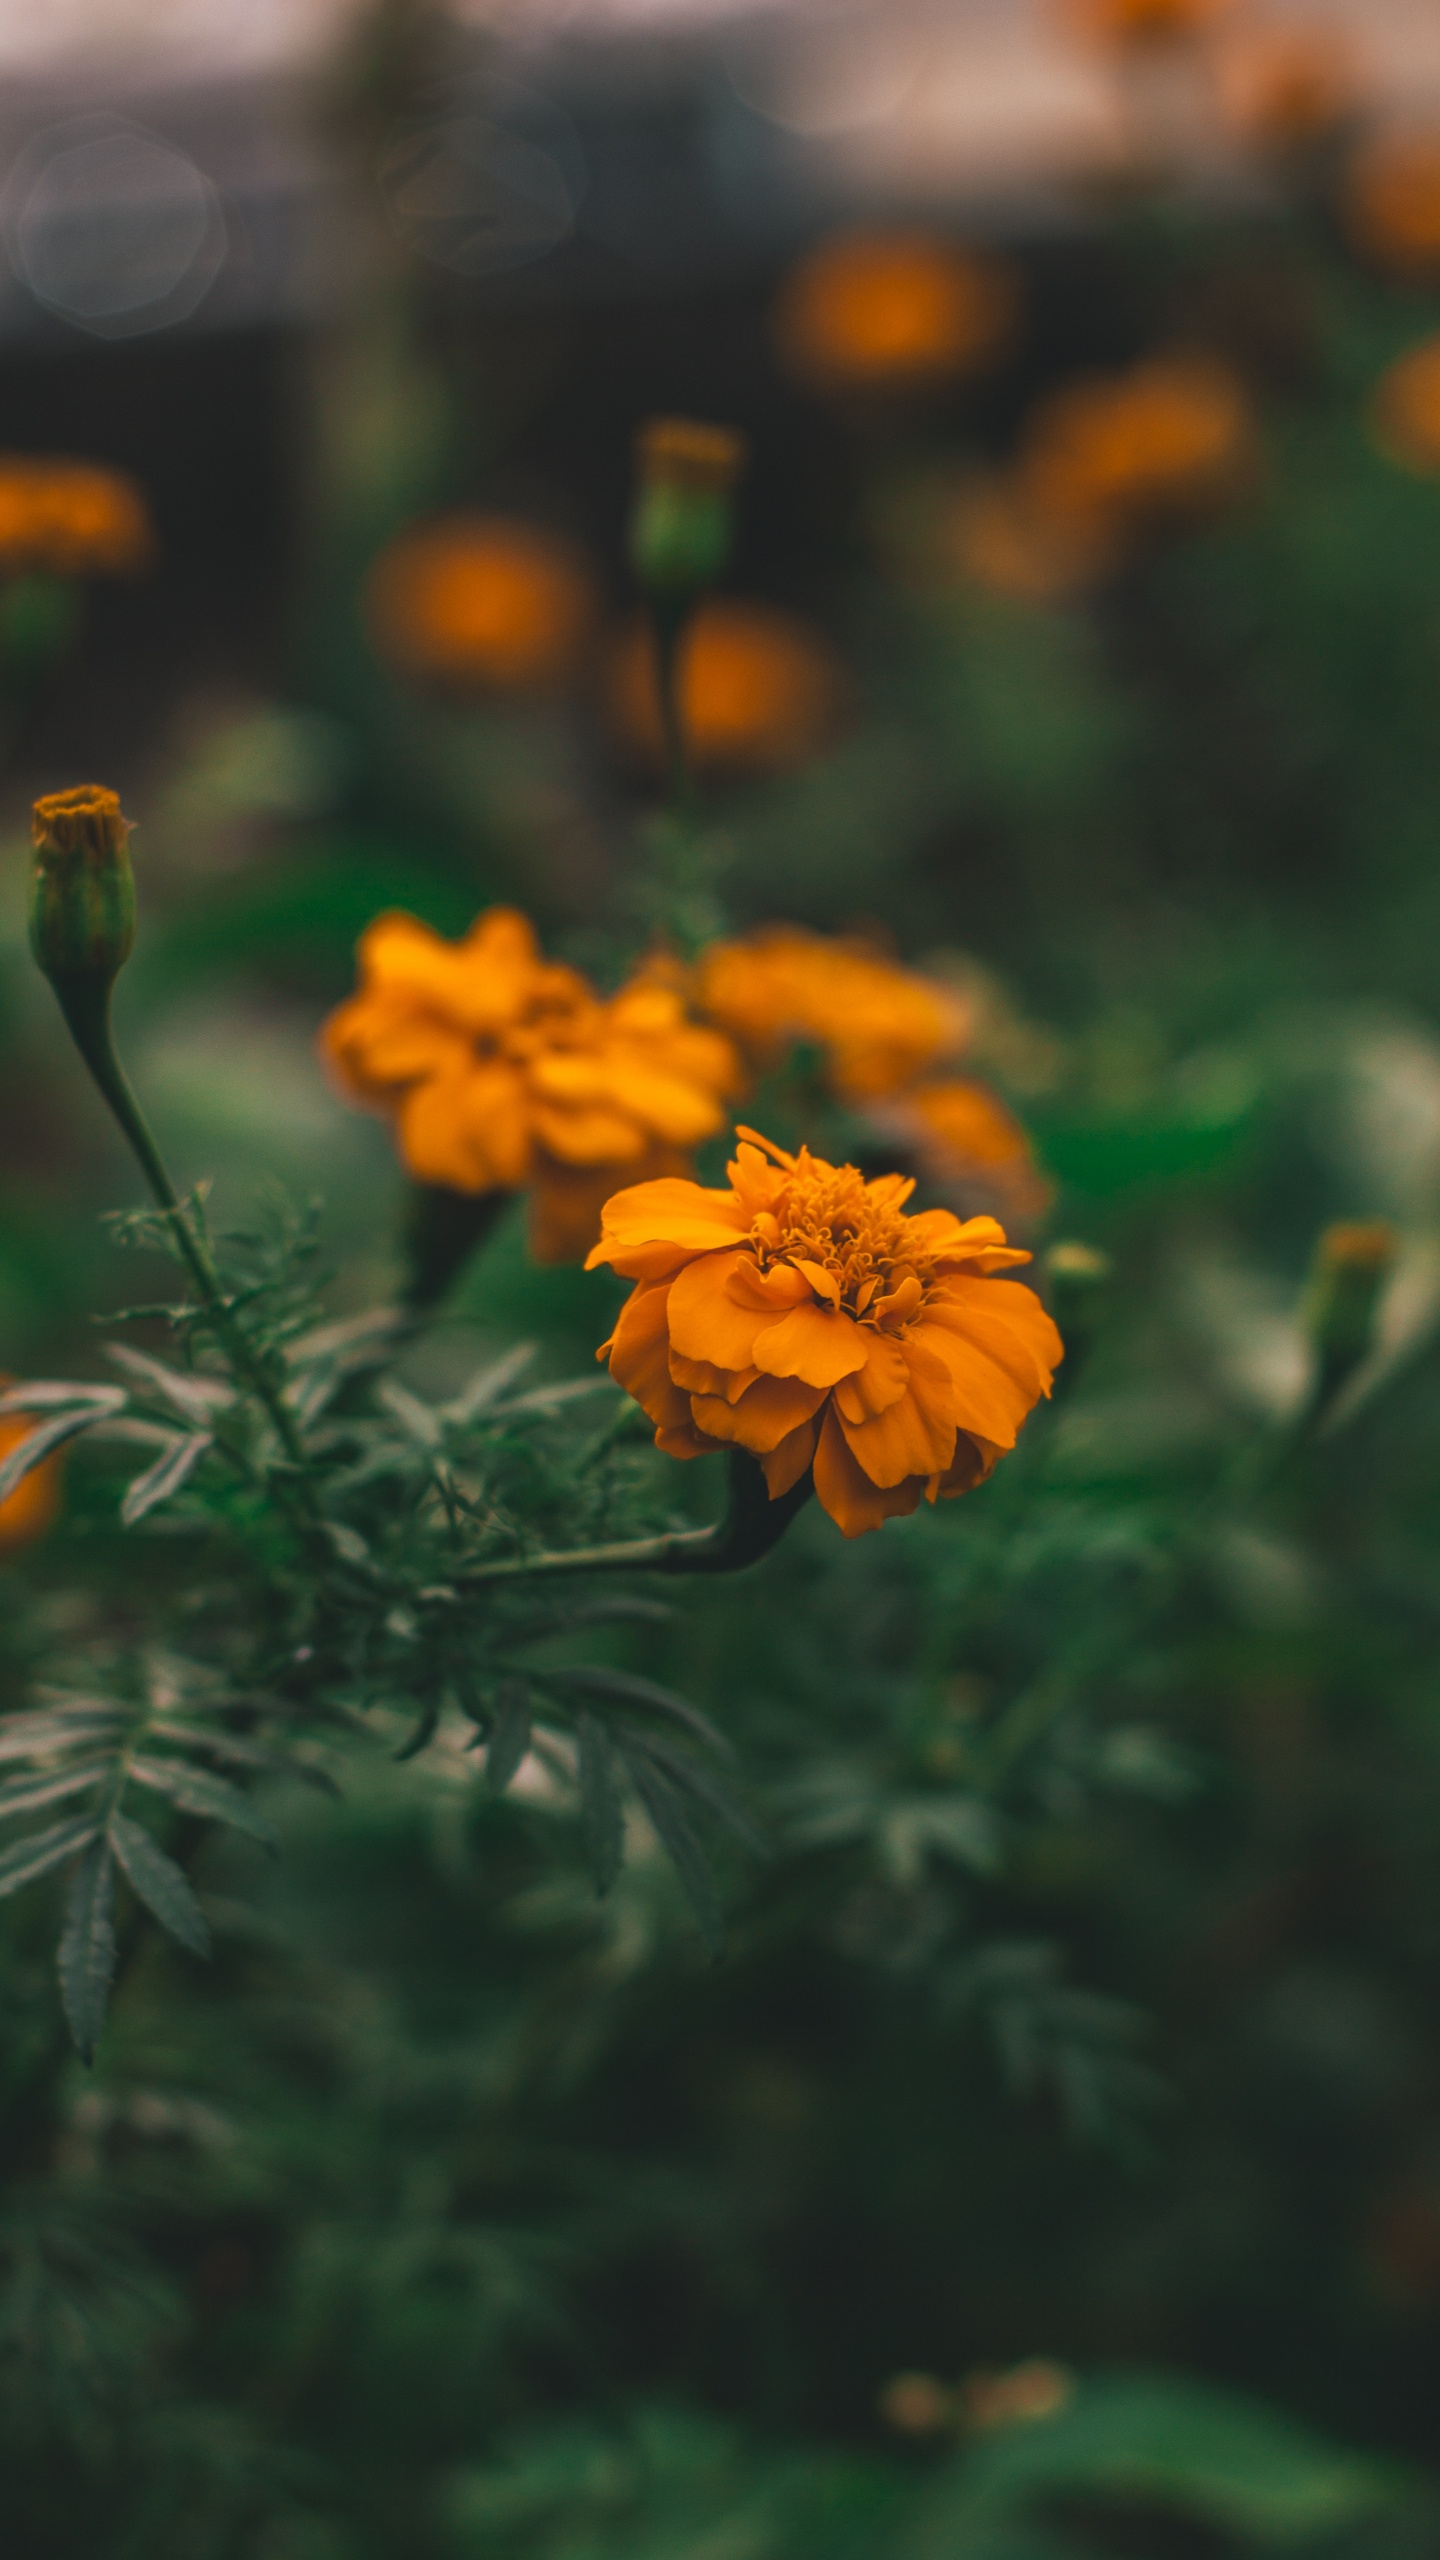 Yellow Flower in Tilt Shift Lens. Wallpaper in 1440x2560 Resolution